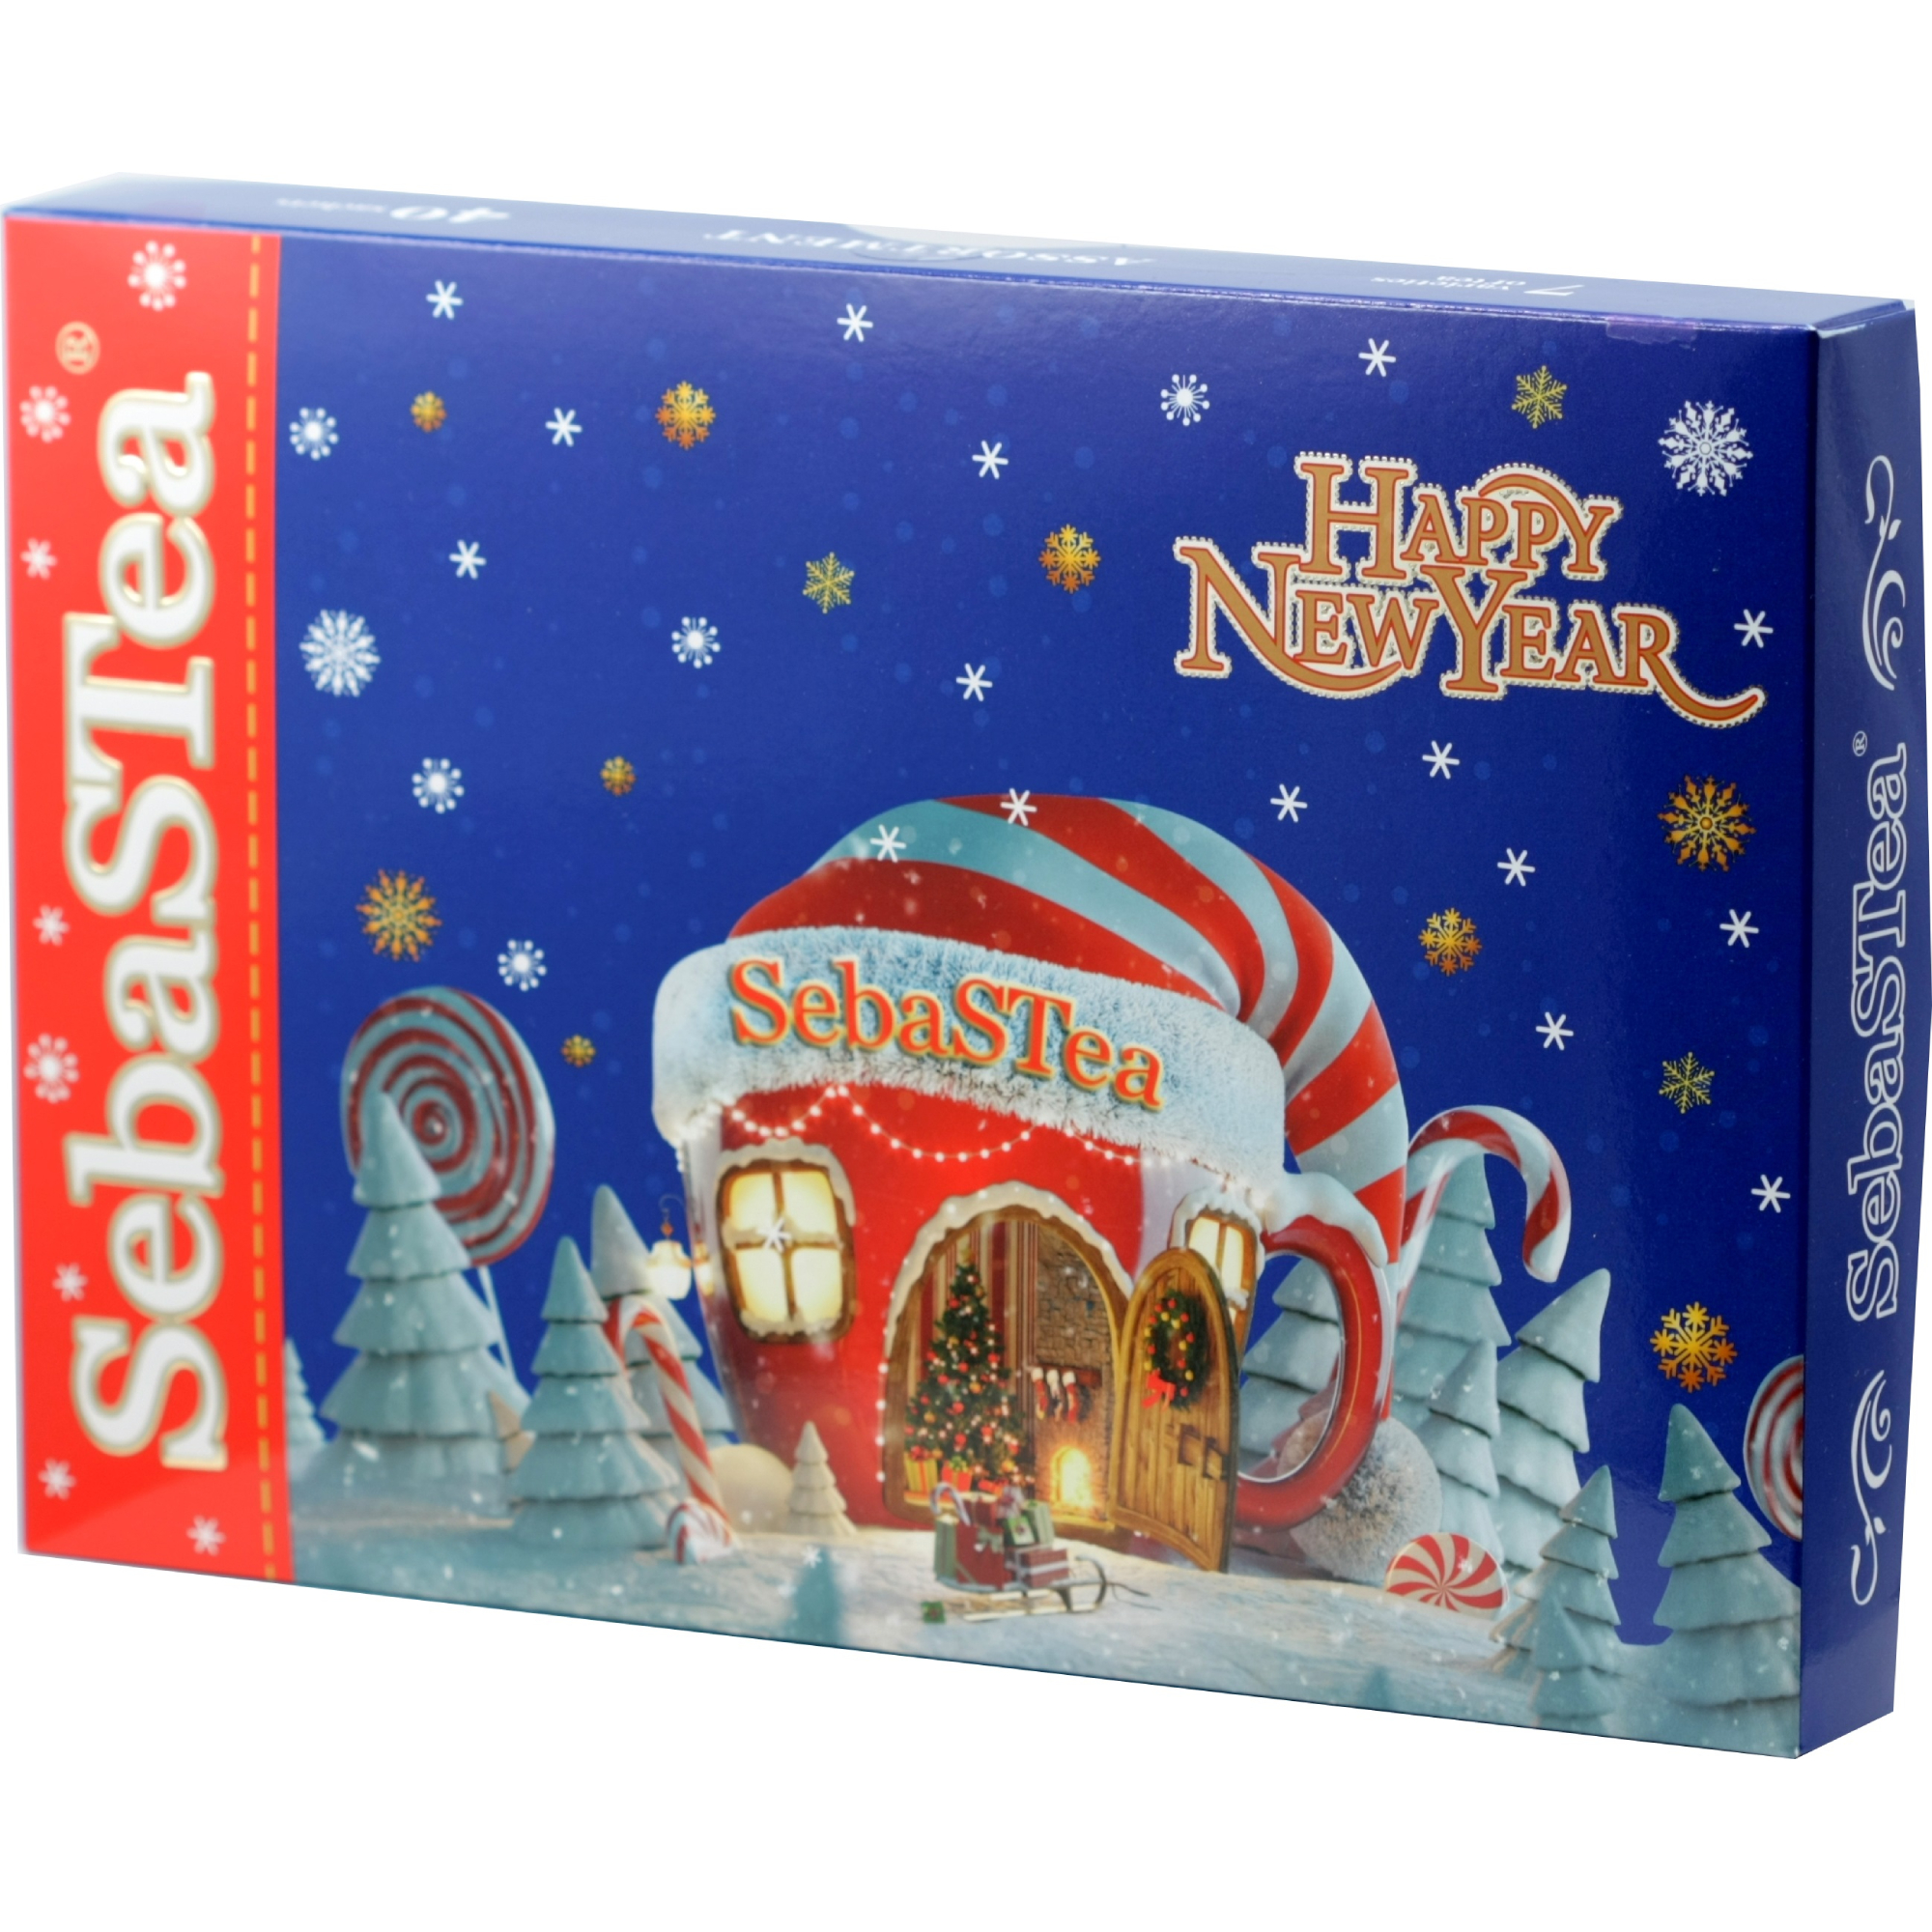 Коллекция чая SebaSTea Christmas Hut Ассорти 3 (40 пакетиков), 65 г набор резинок пружинок для волос с ароматом персика